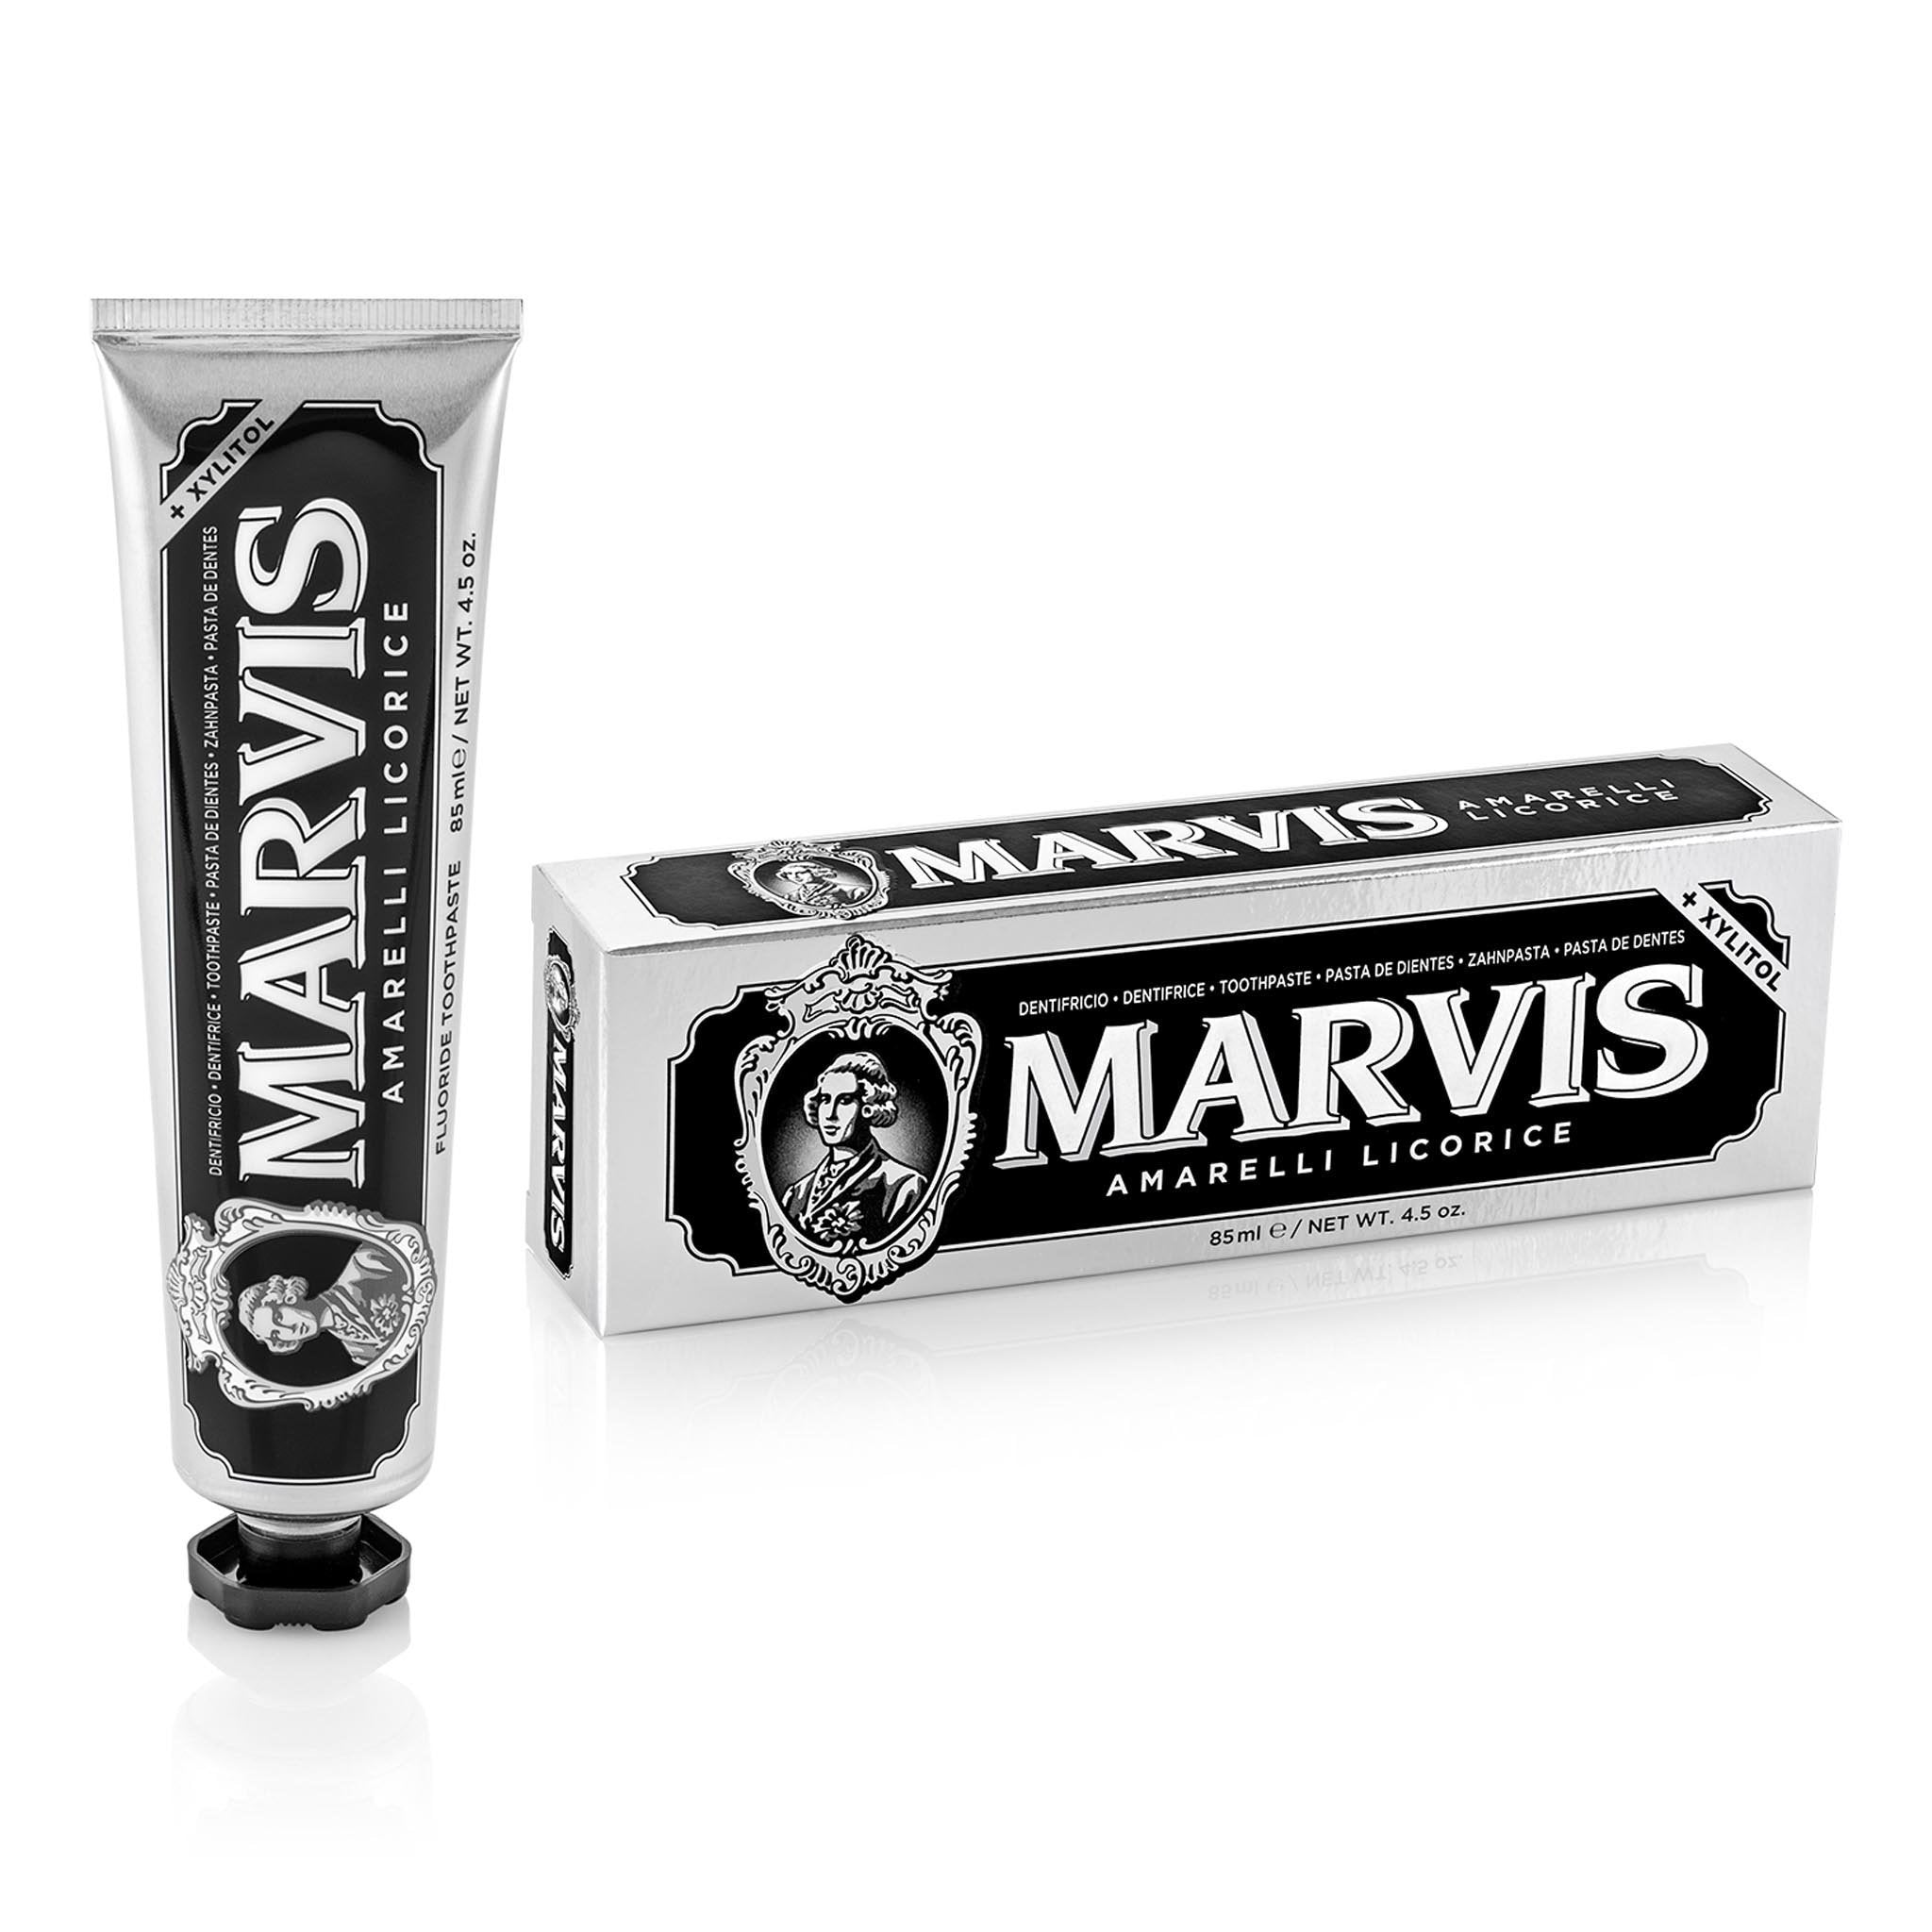 Marvis tannkrem - Amarelli Licorice Mint 25 ml